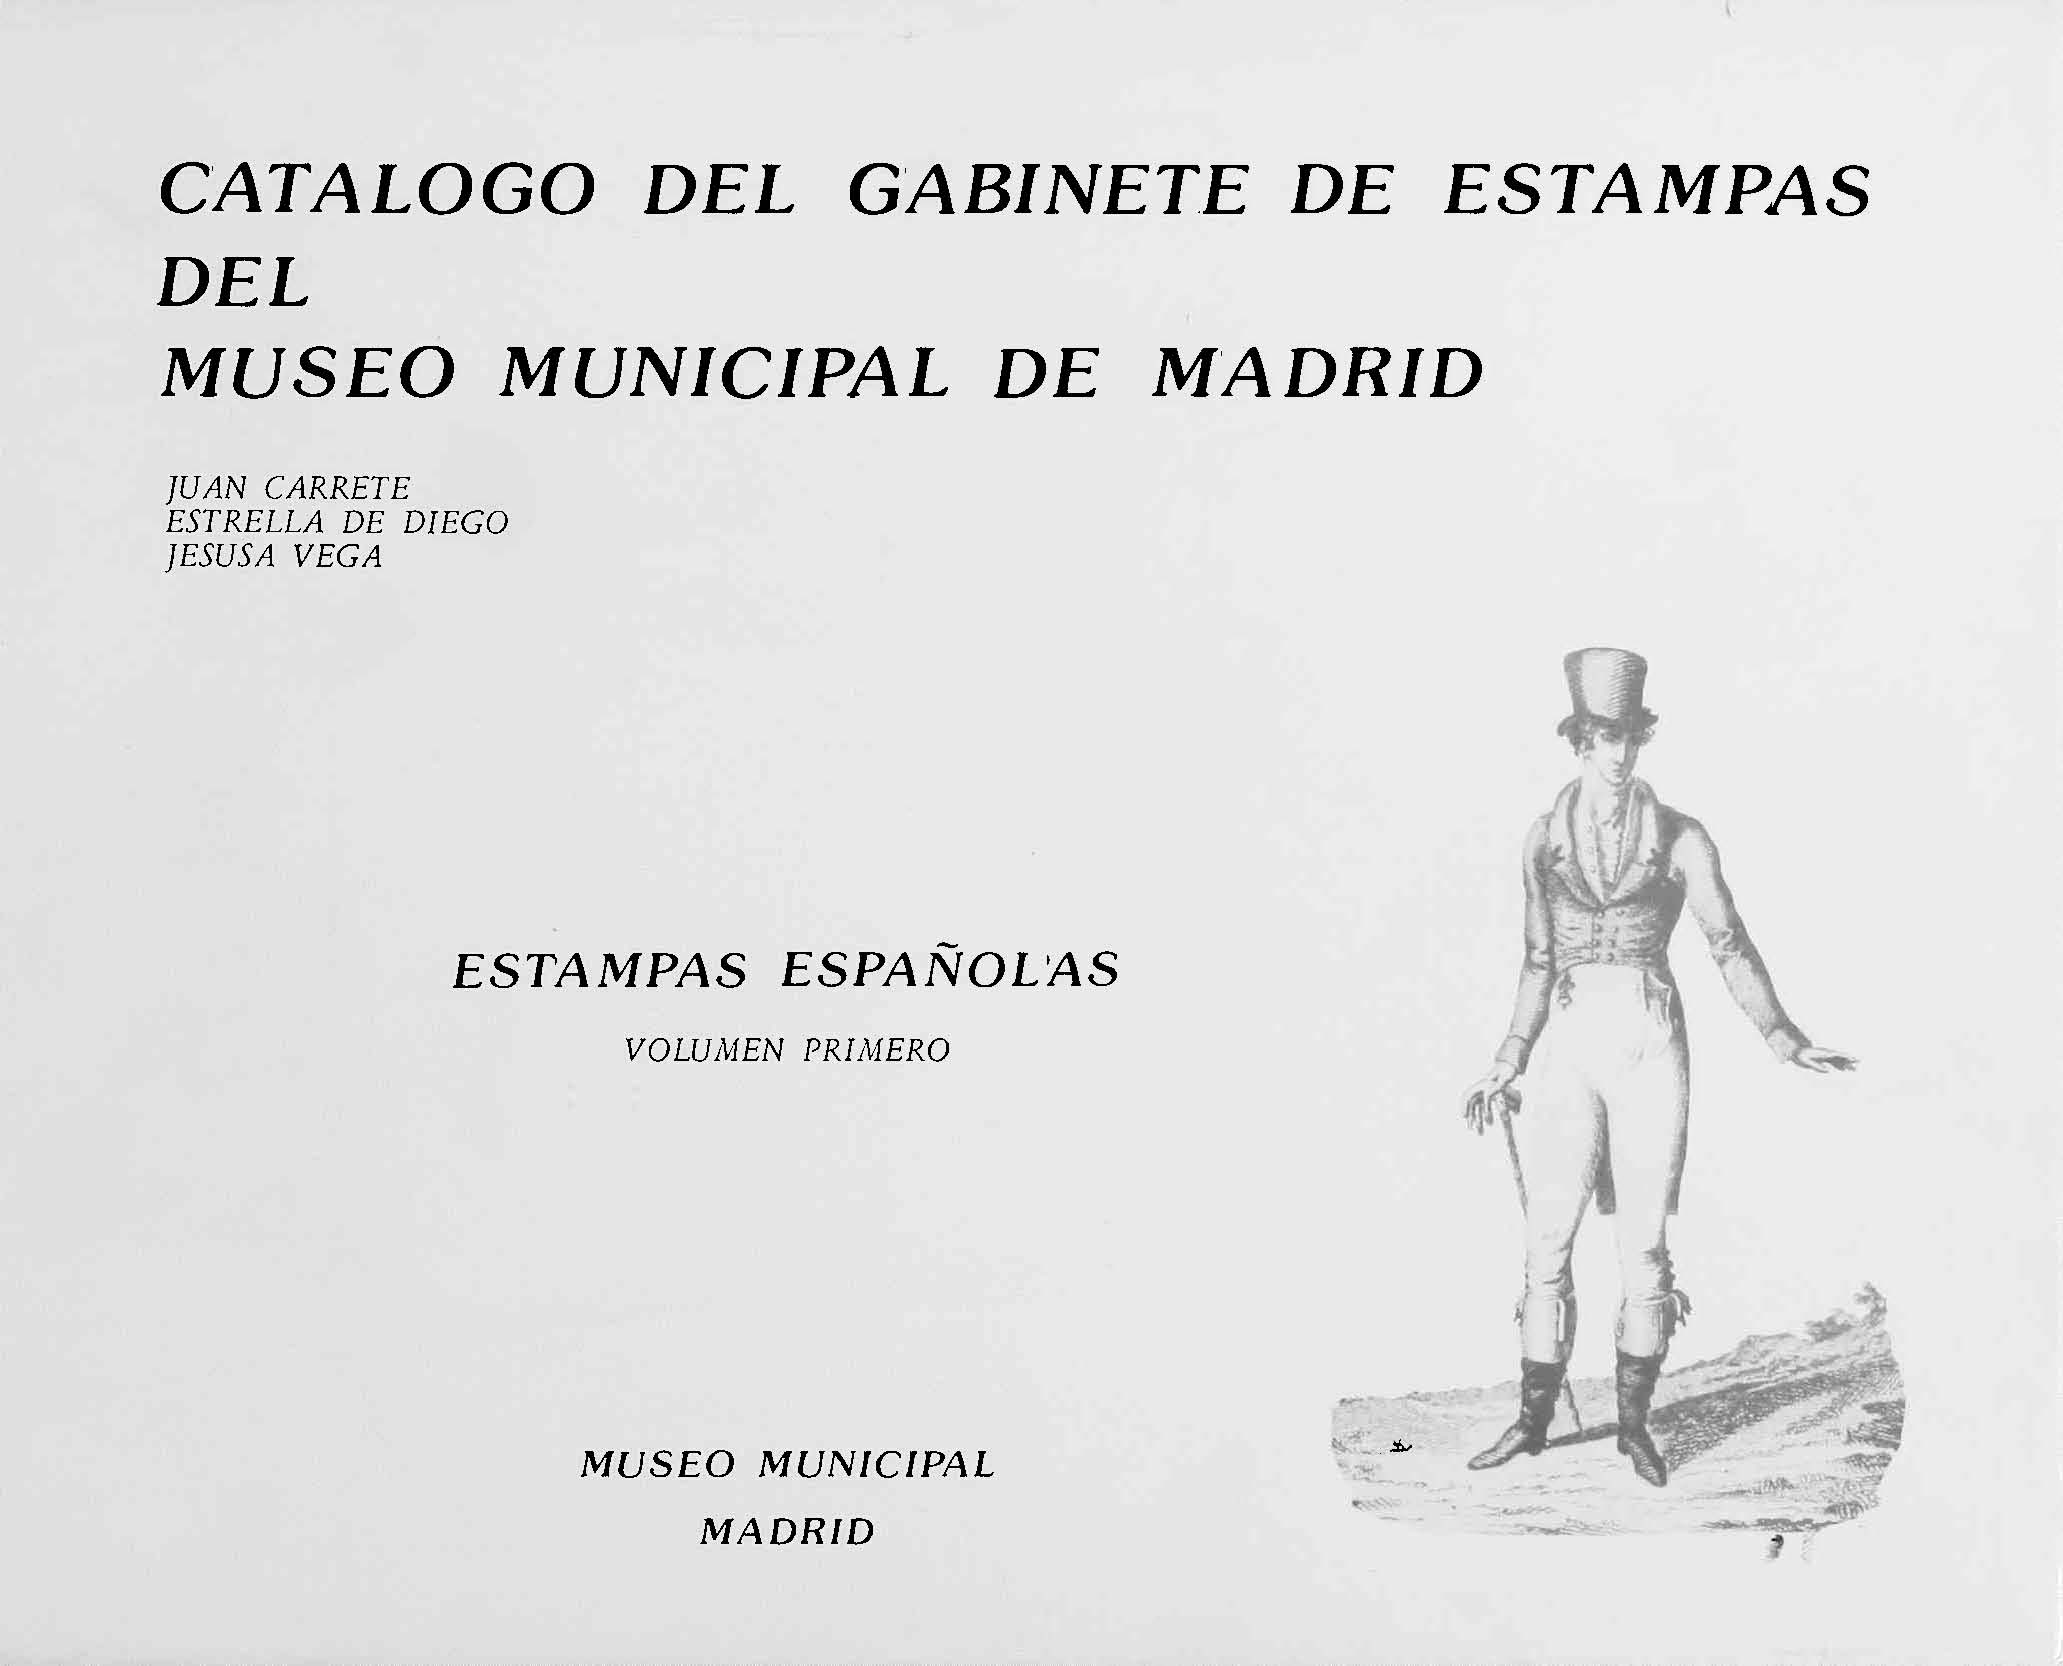 Catlogo del Gabinete de Estampas del Museo Municipal de Madrid. Estampas Espaolas. Volumen primero